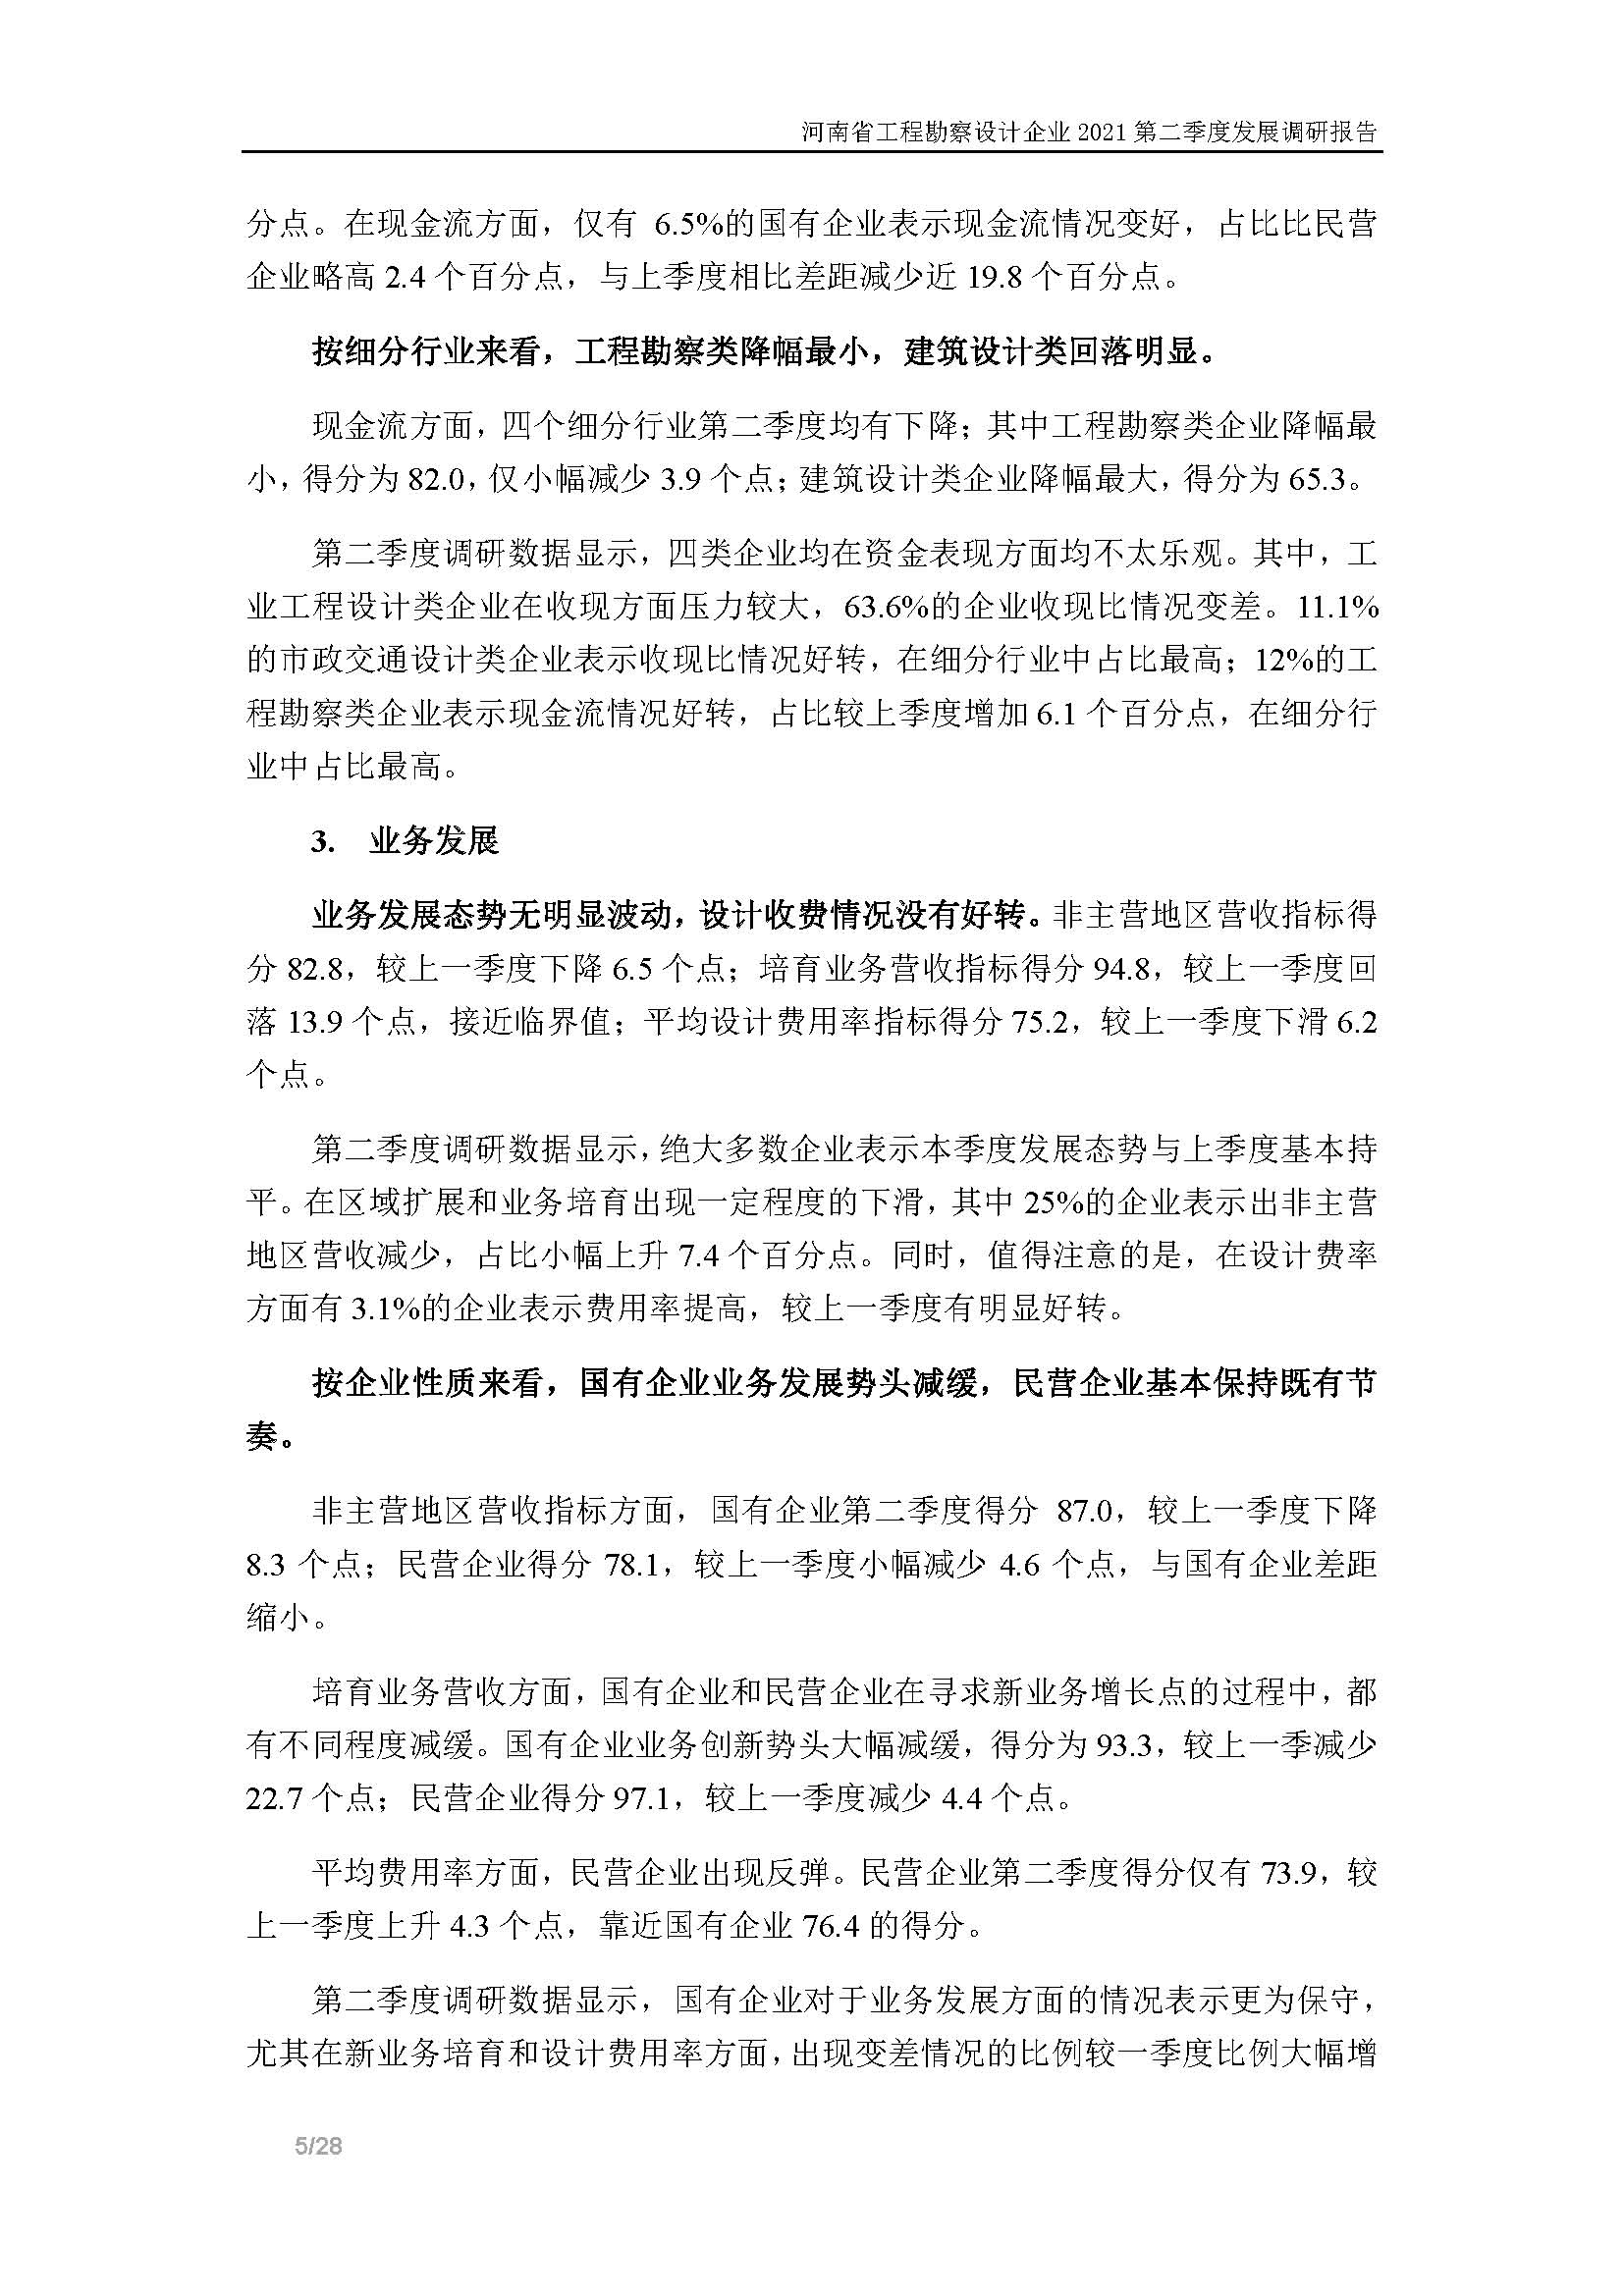 河南省工程勘察设计企业2021第二季度发展调研报告-公开版_页面_06.jpg